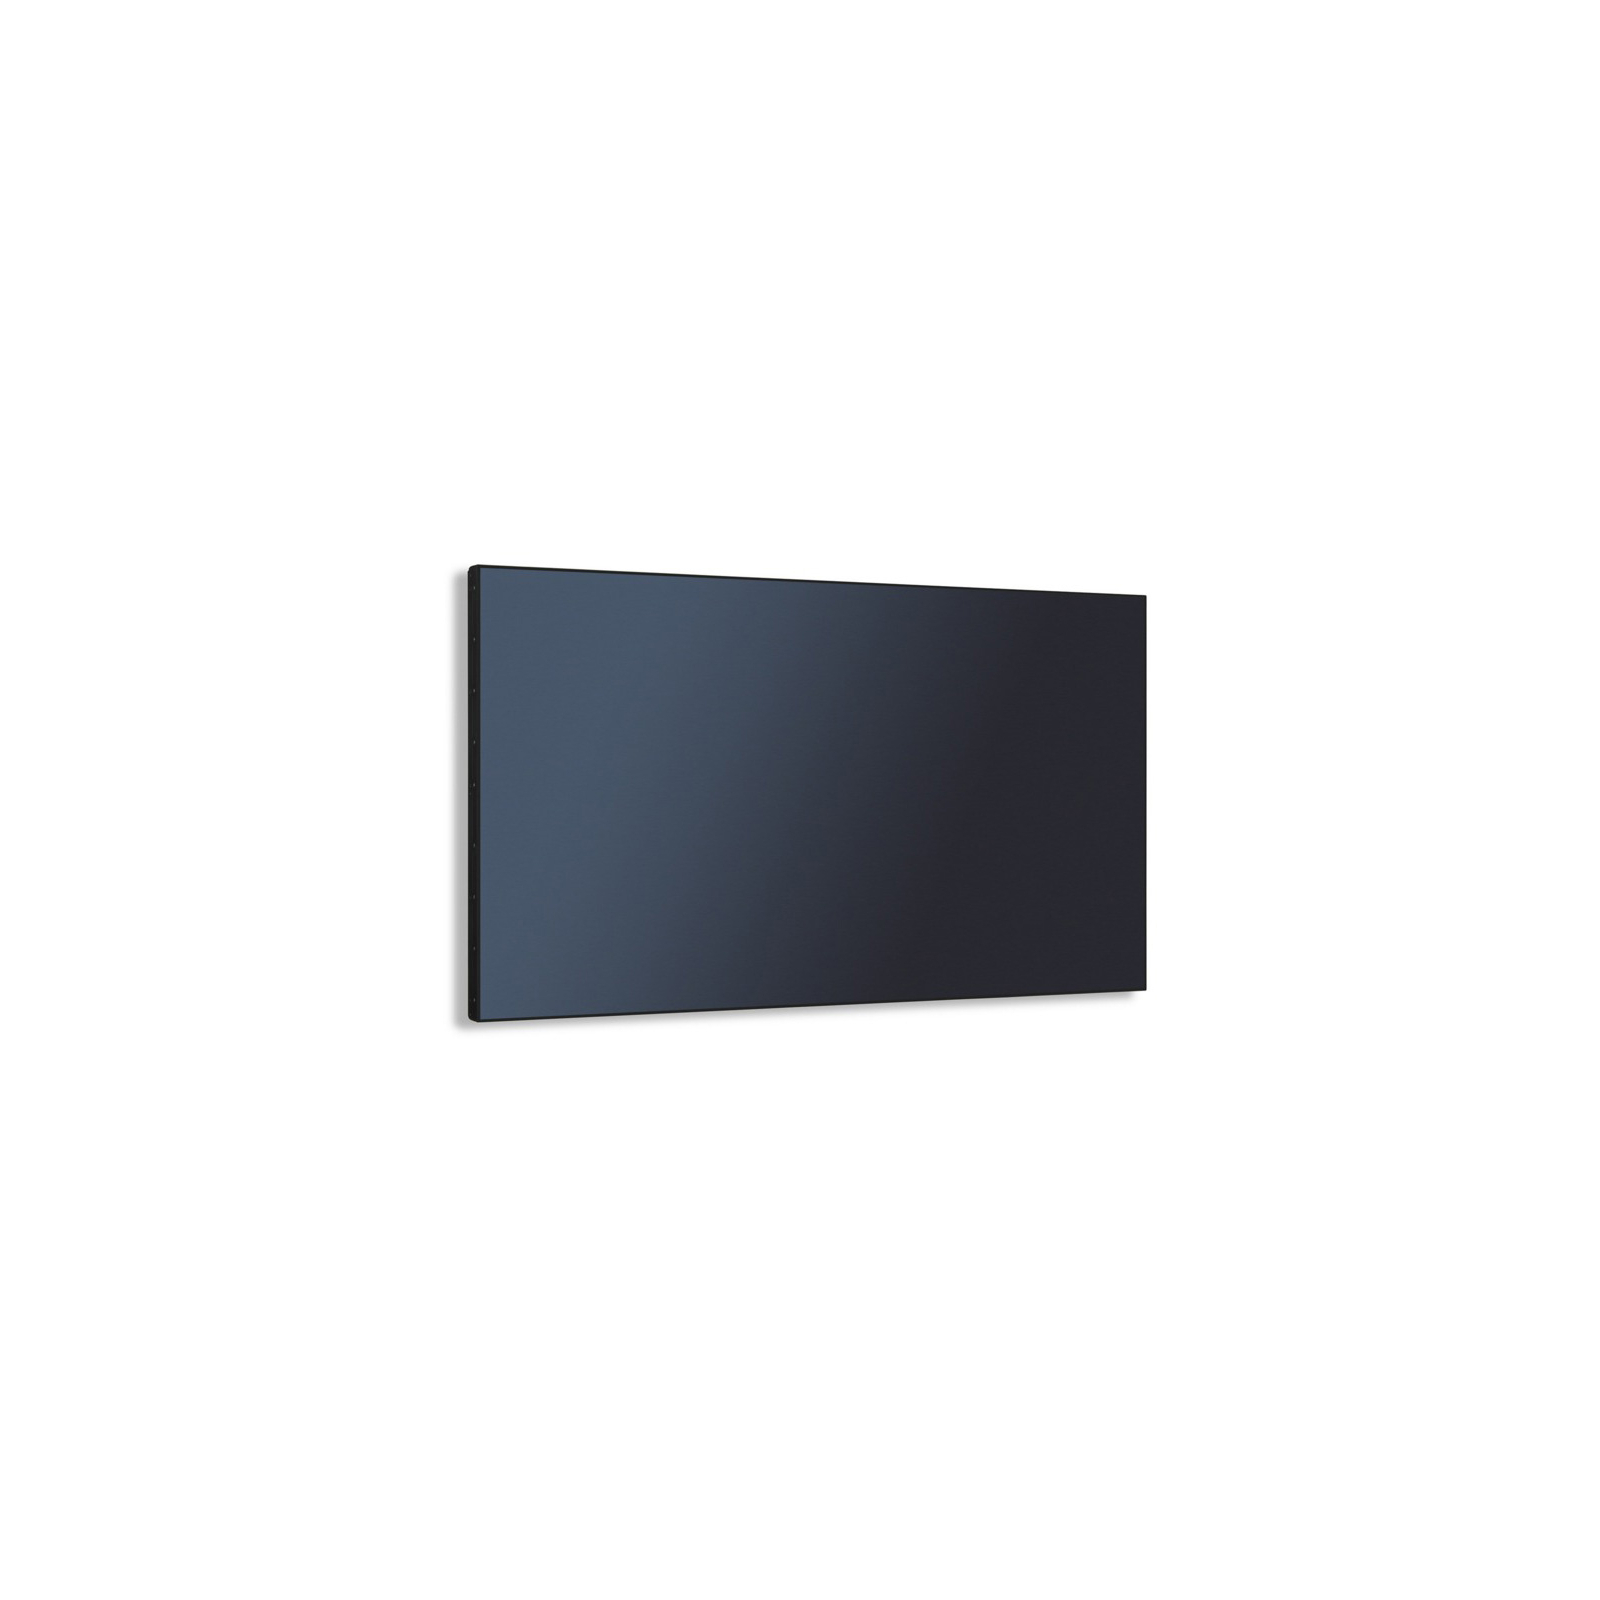 LCD панель NEC MultiSync X555UNV (60003906) изображение 5